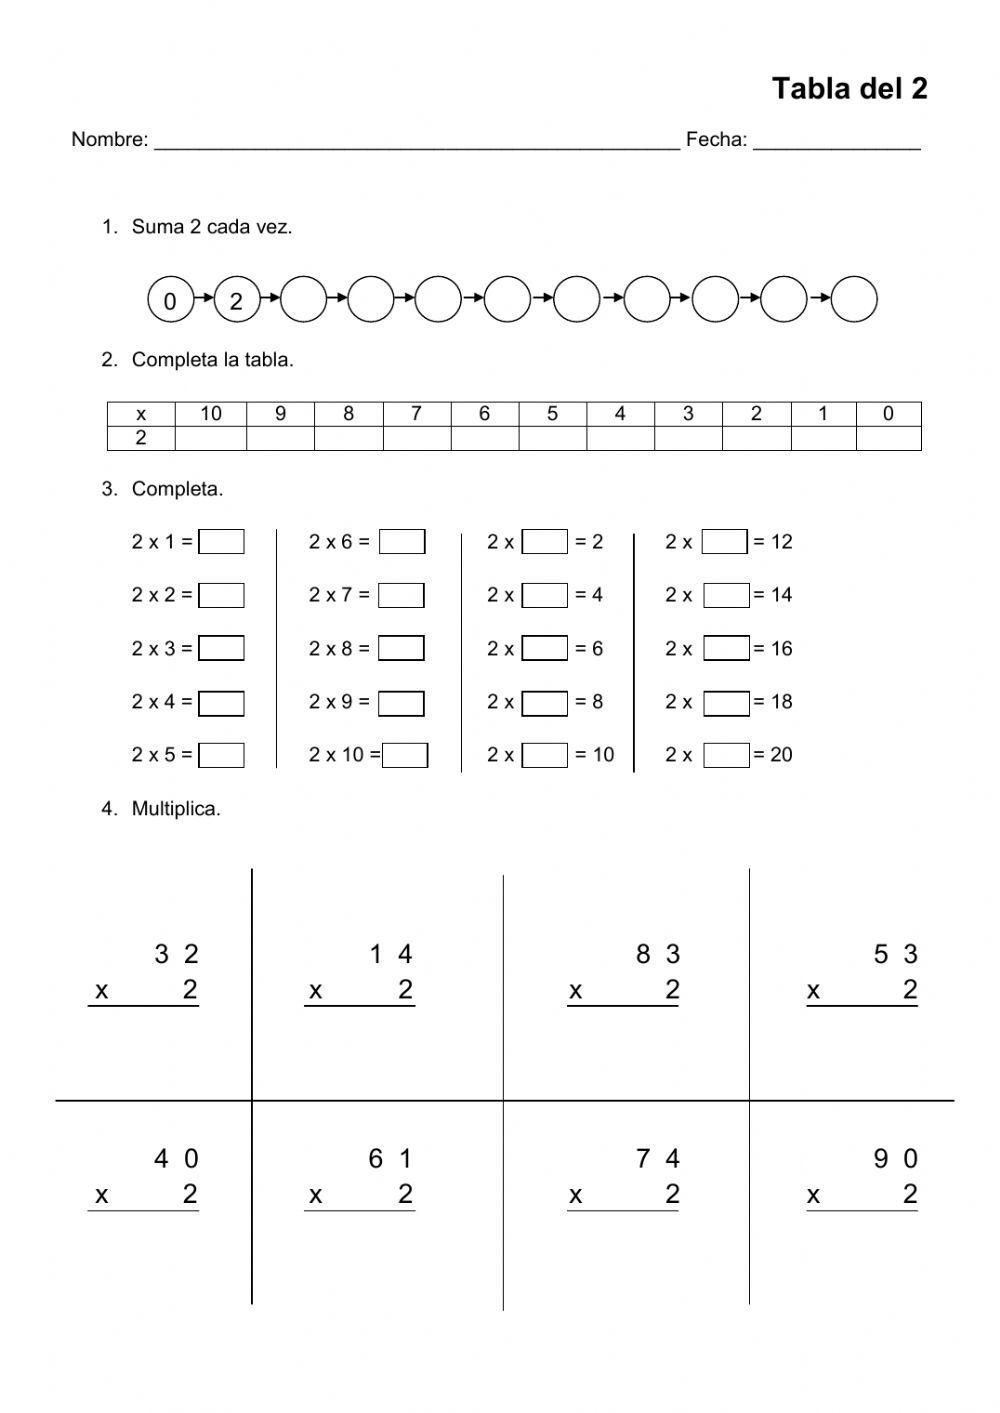 La tabla de multiplicar del 2